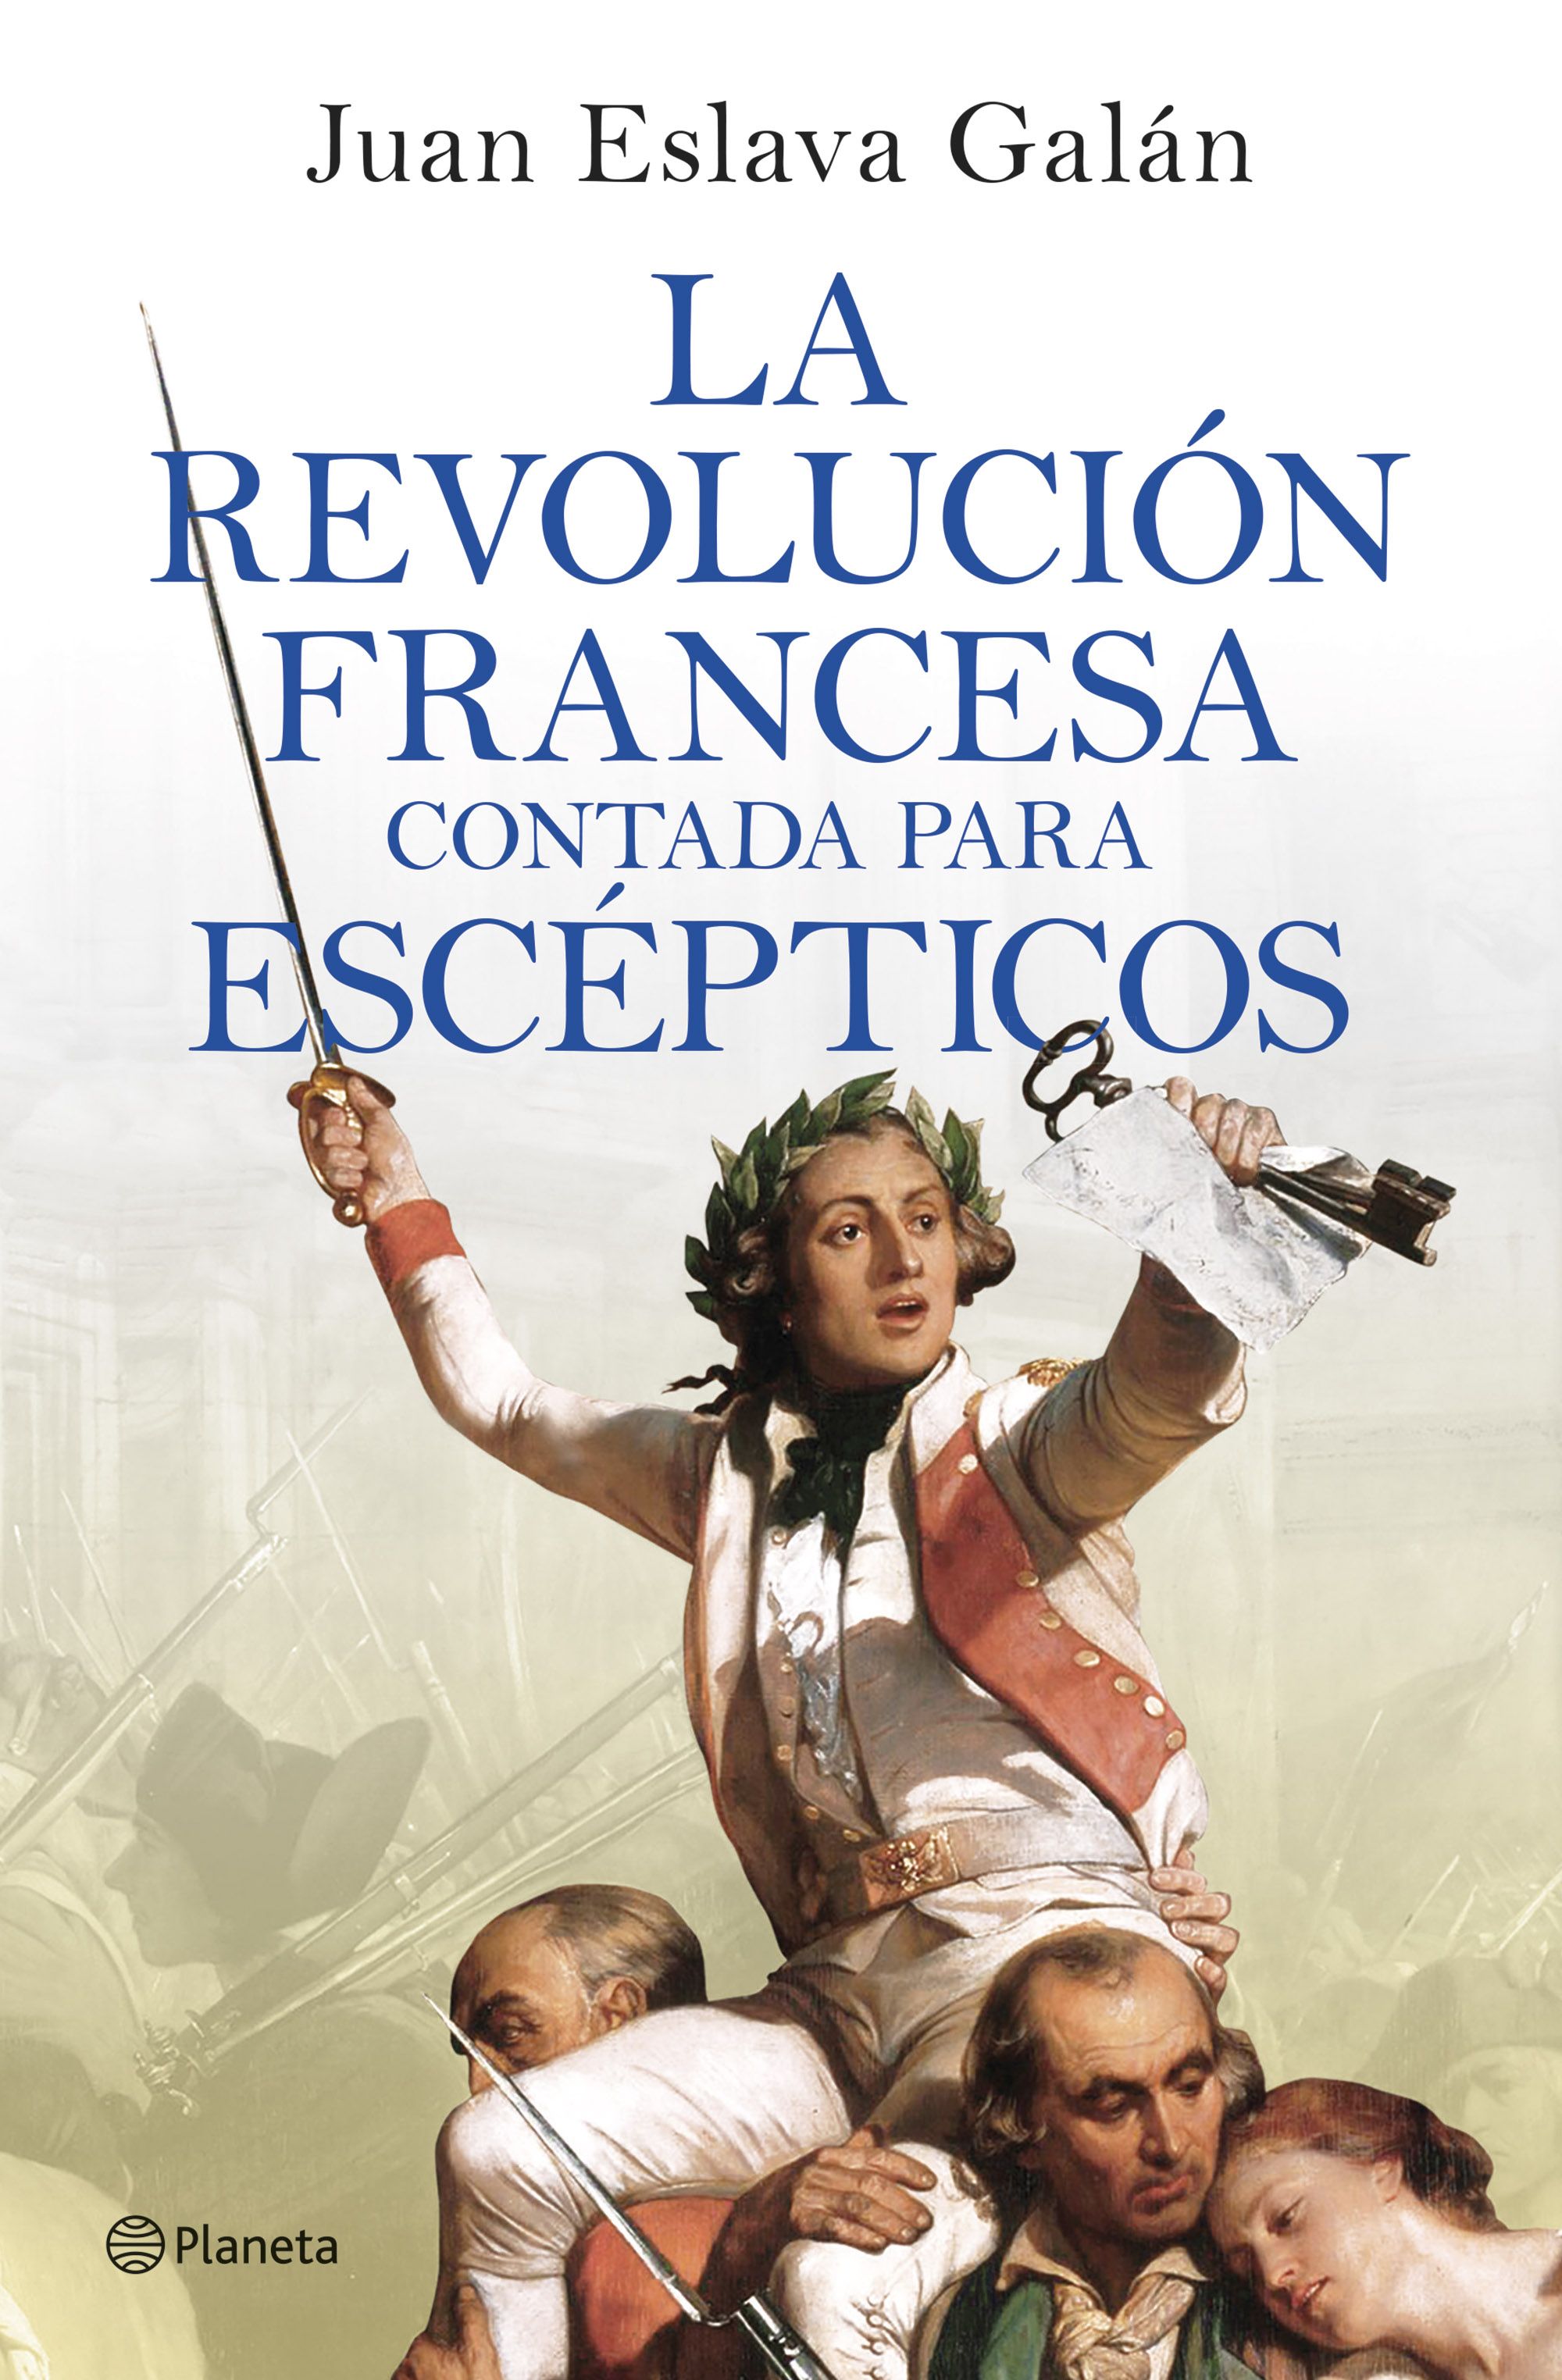 La Revolución Francesa contada para escépticos